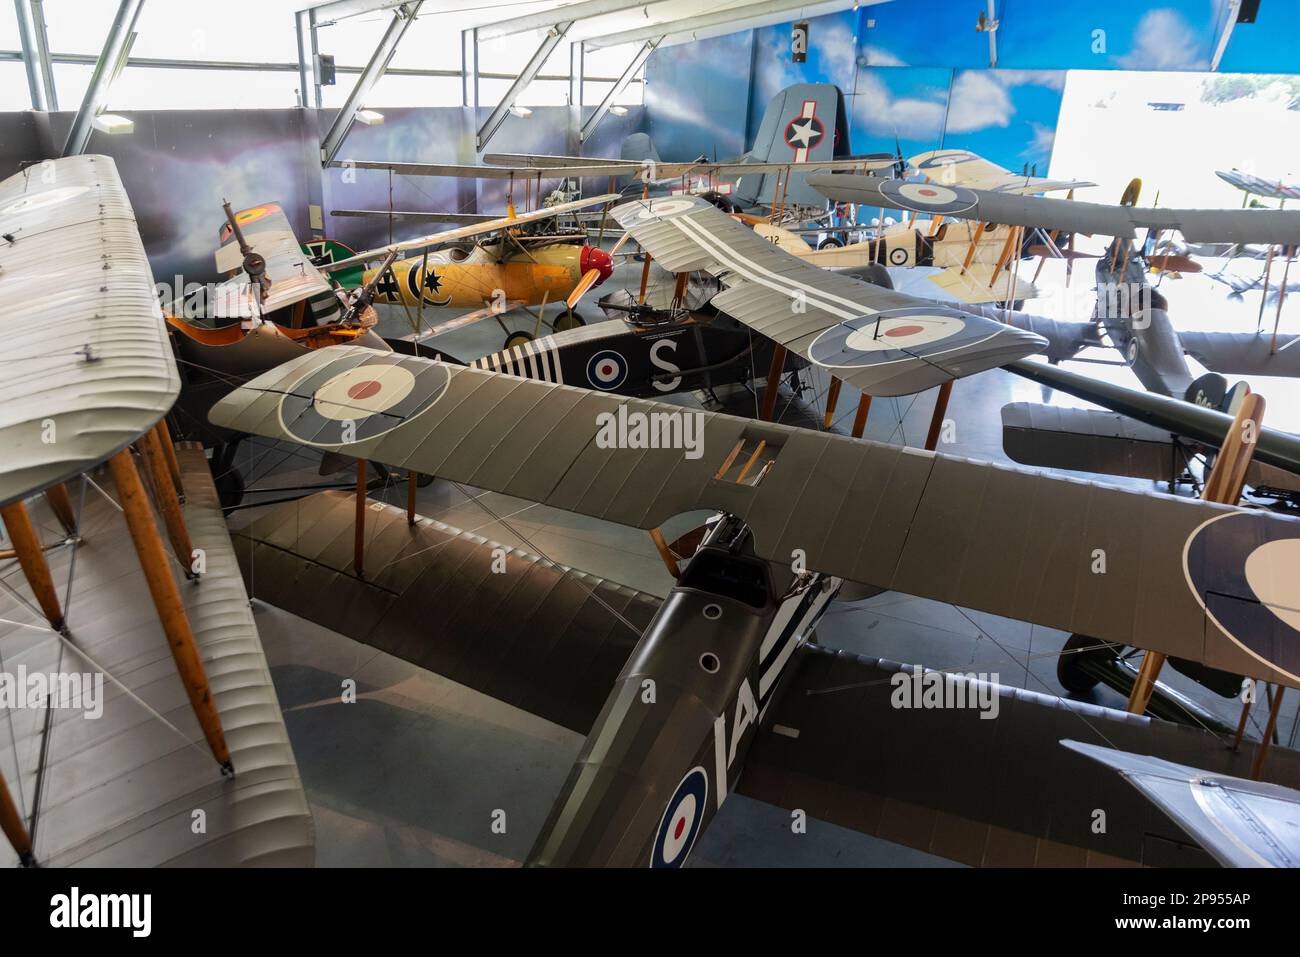 Le hangar Vintage Aviator Ltd à Hood Aerodrome, Masterton, Nouvelle-Zélande avec les avions authentiques et de reproduction de la première Guerre mondiale. Biavions de la grande Guerre Banque D'Images